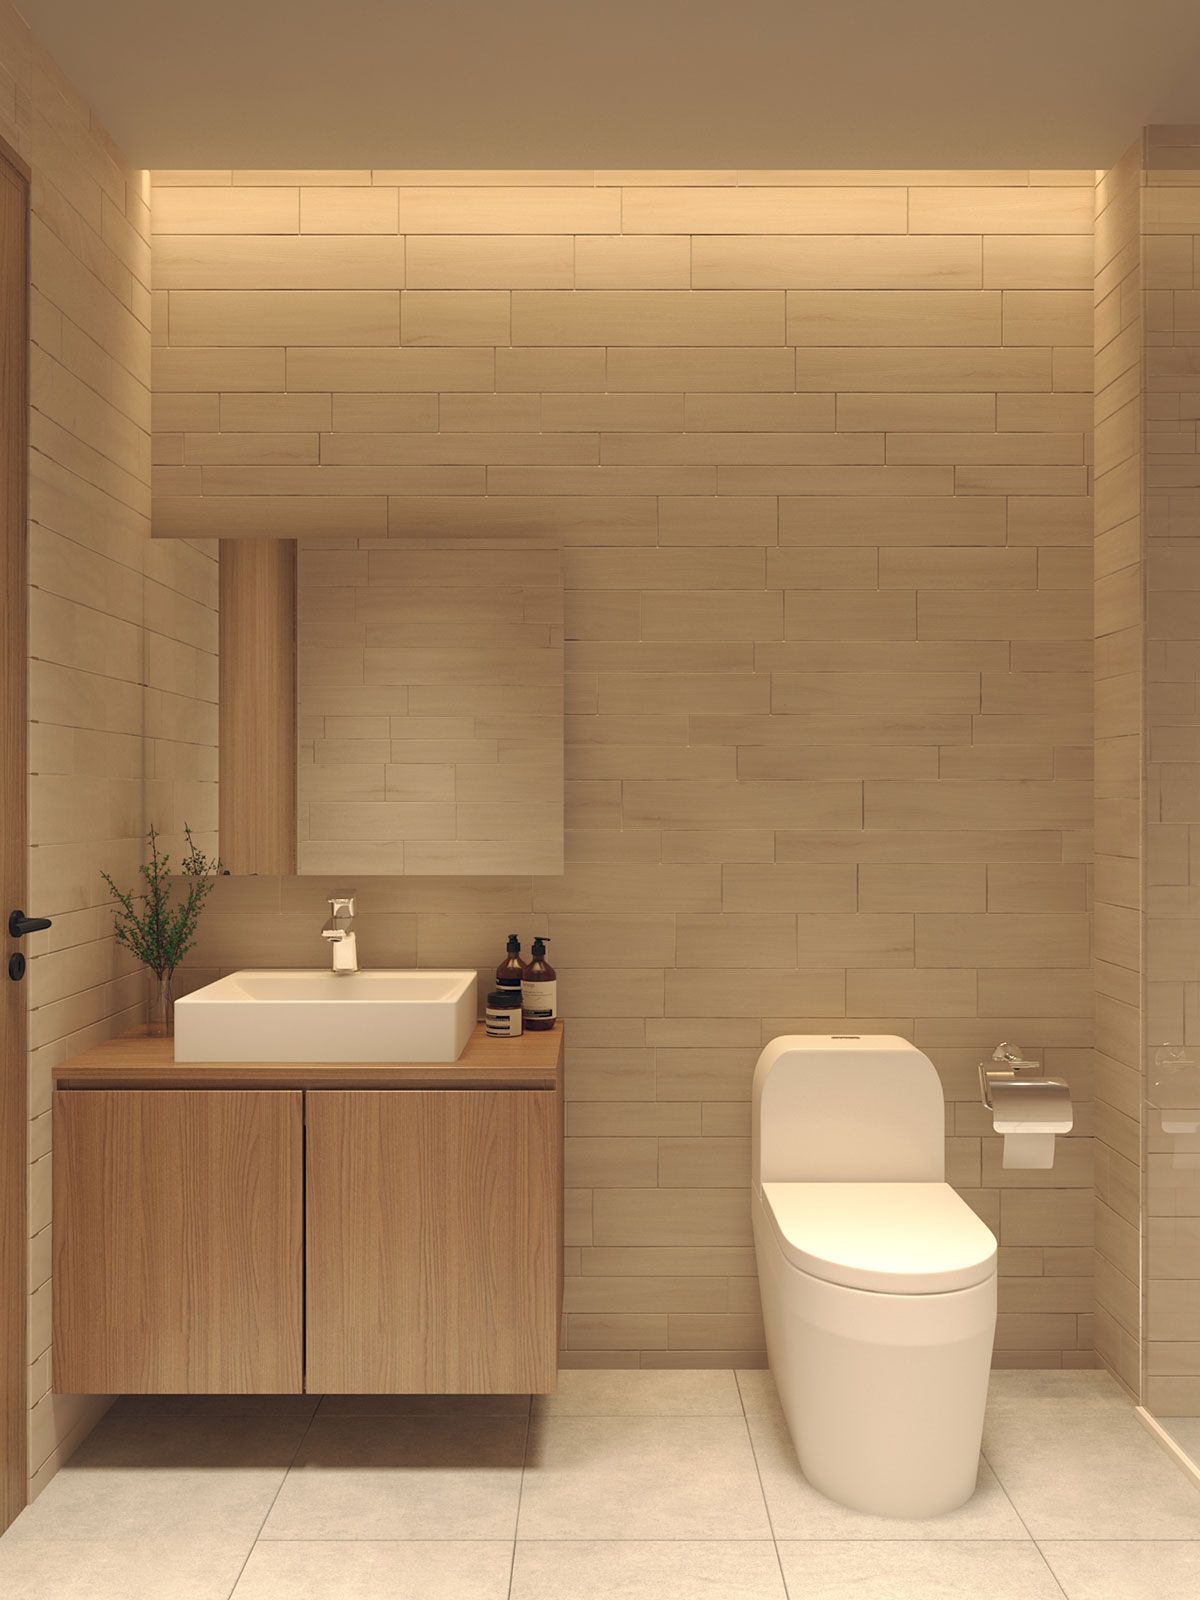 Thiết kế nhà vệ sinh tối giản trong phong cách Nhật Bản